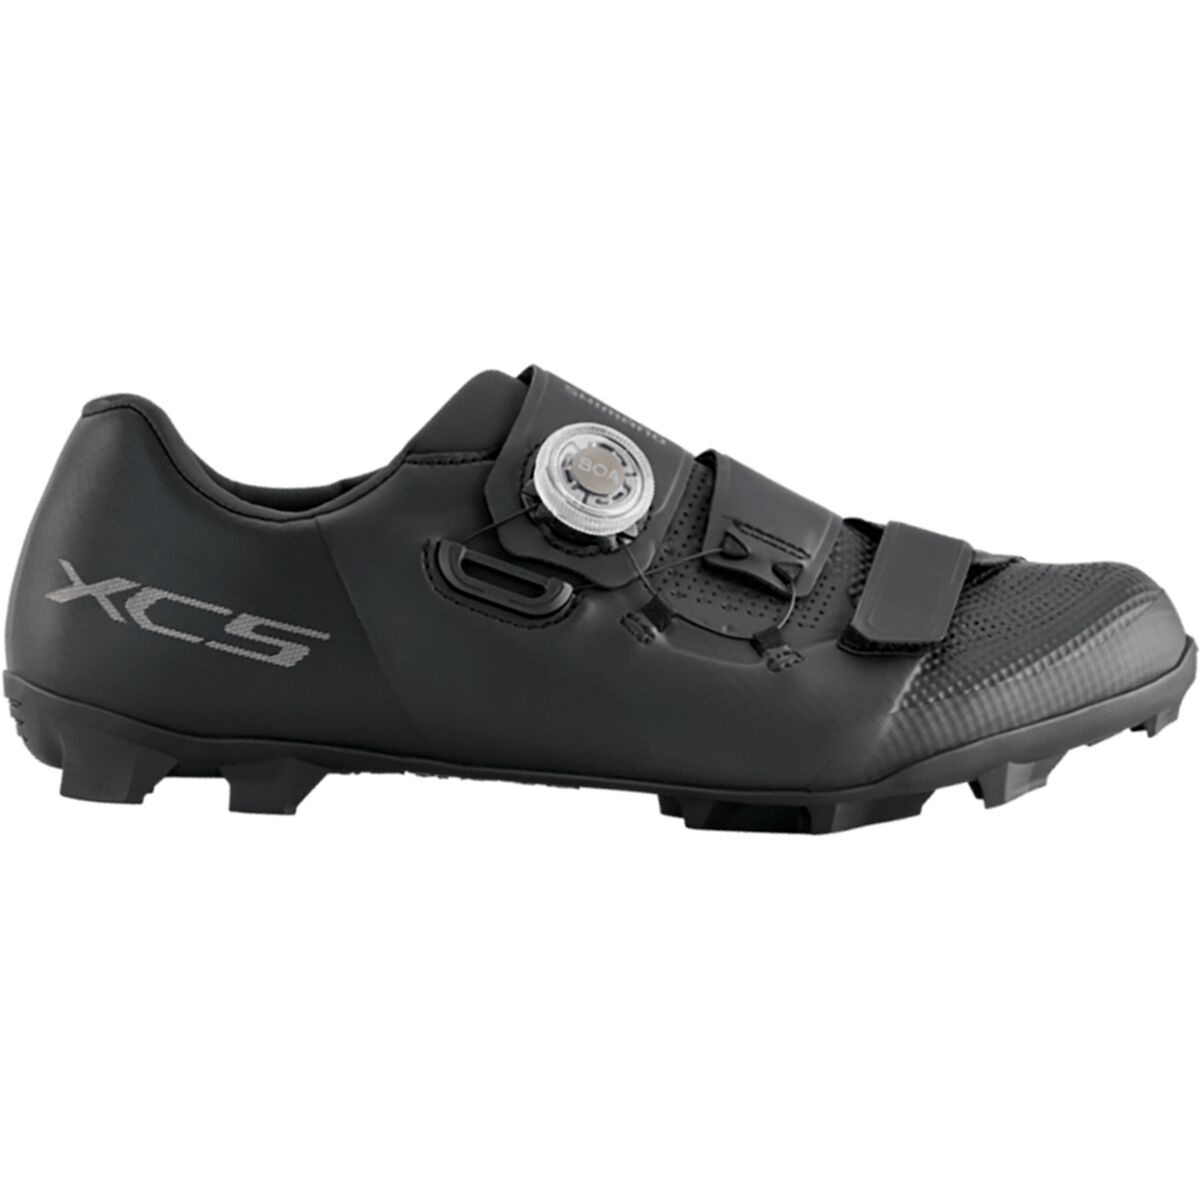 Shimano XC502 Wide Cycling Shoe - Men's Black, 47.0